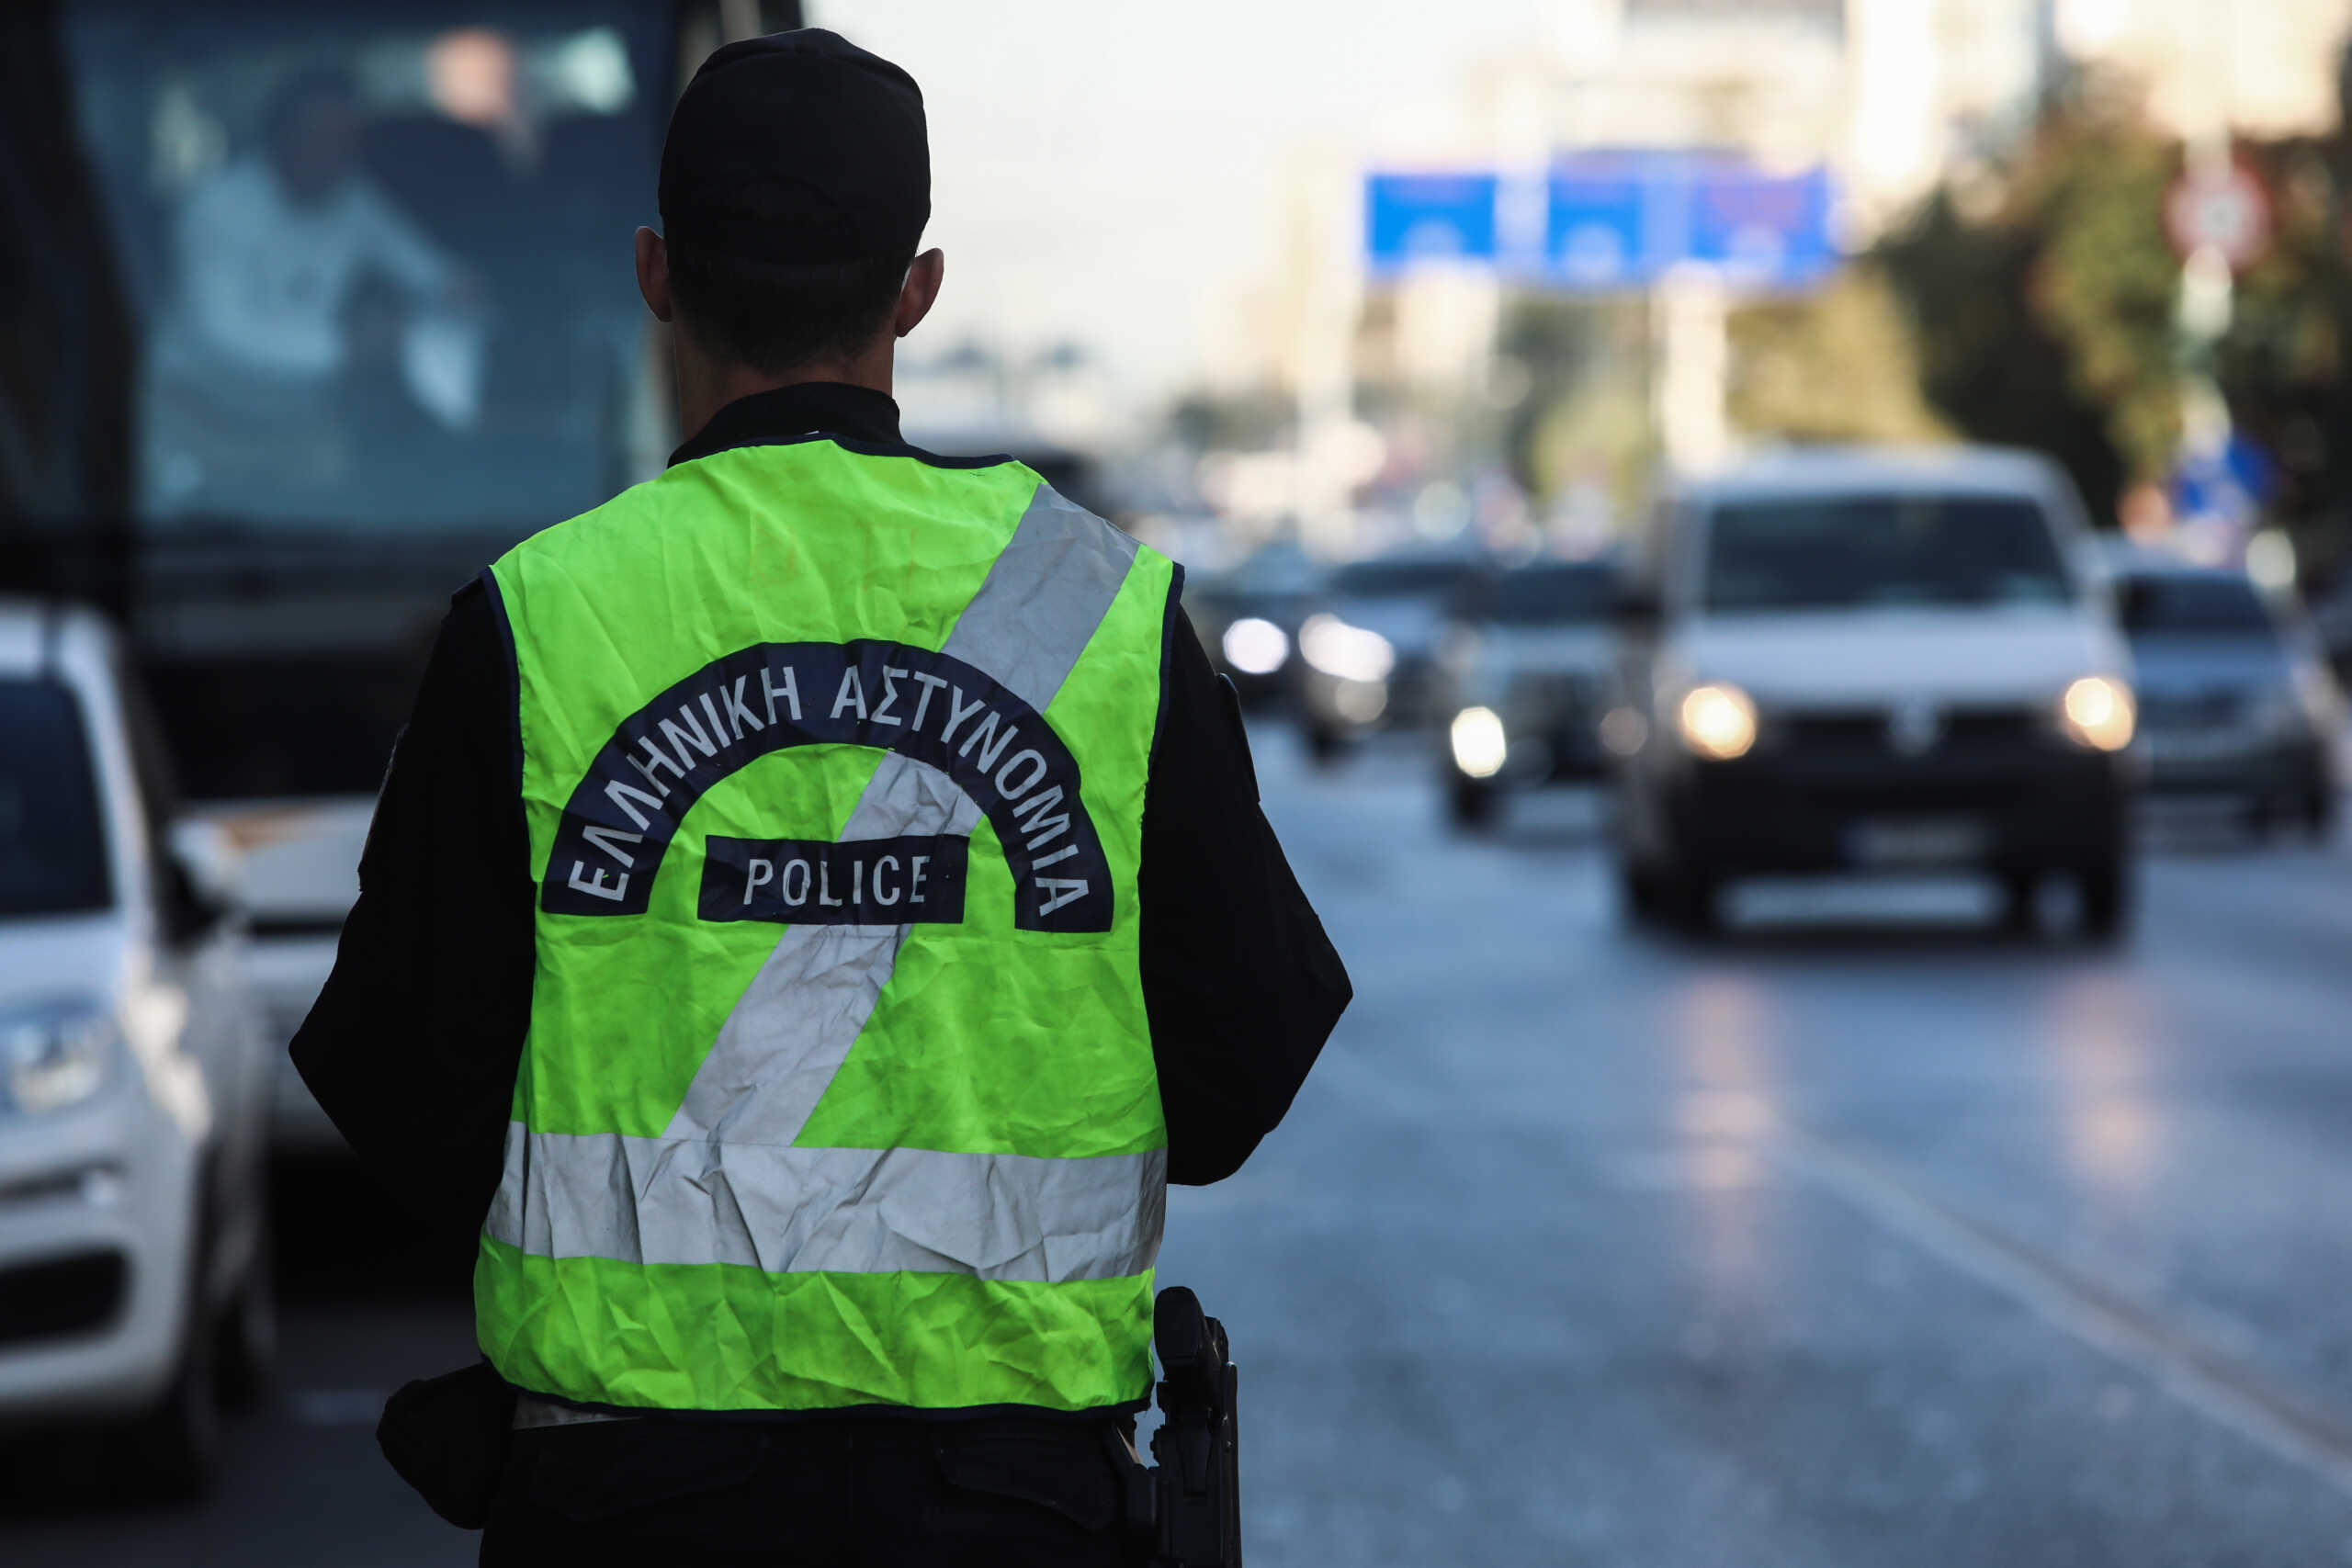 Κυκλοφοριακές ρυθμίσεις στην Αθηνών – Κορίνθου λόγω έργων από την Δευτέρα 27 Νοεμβρίου